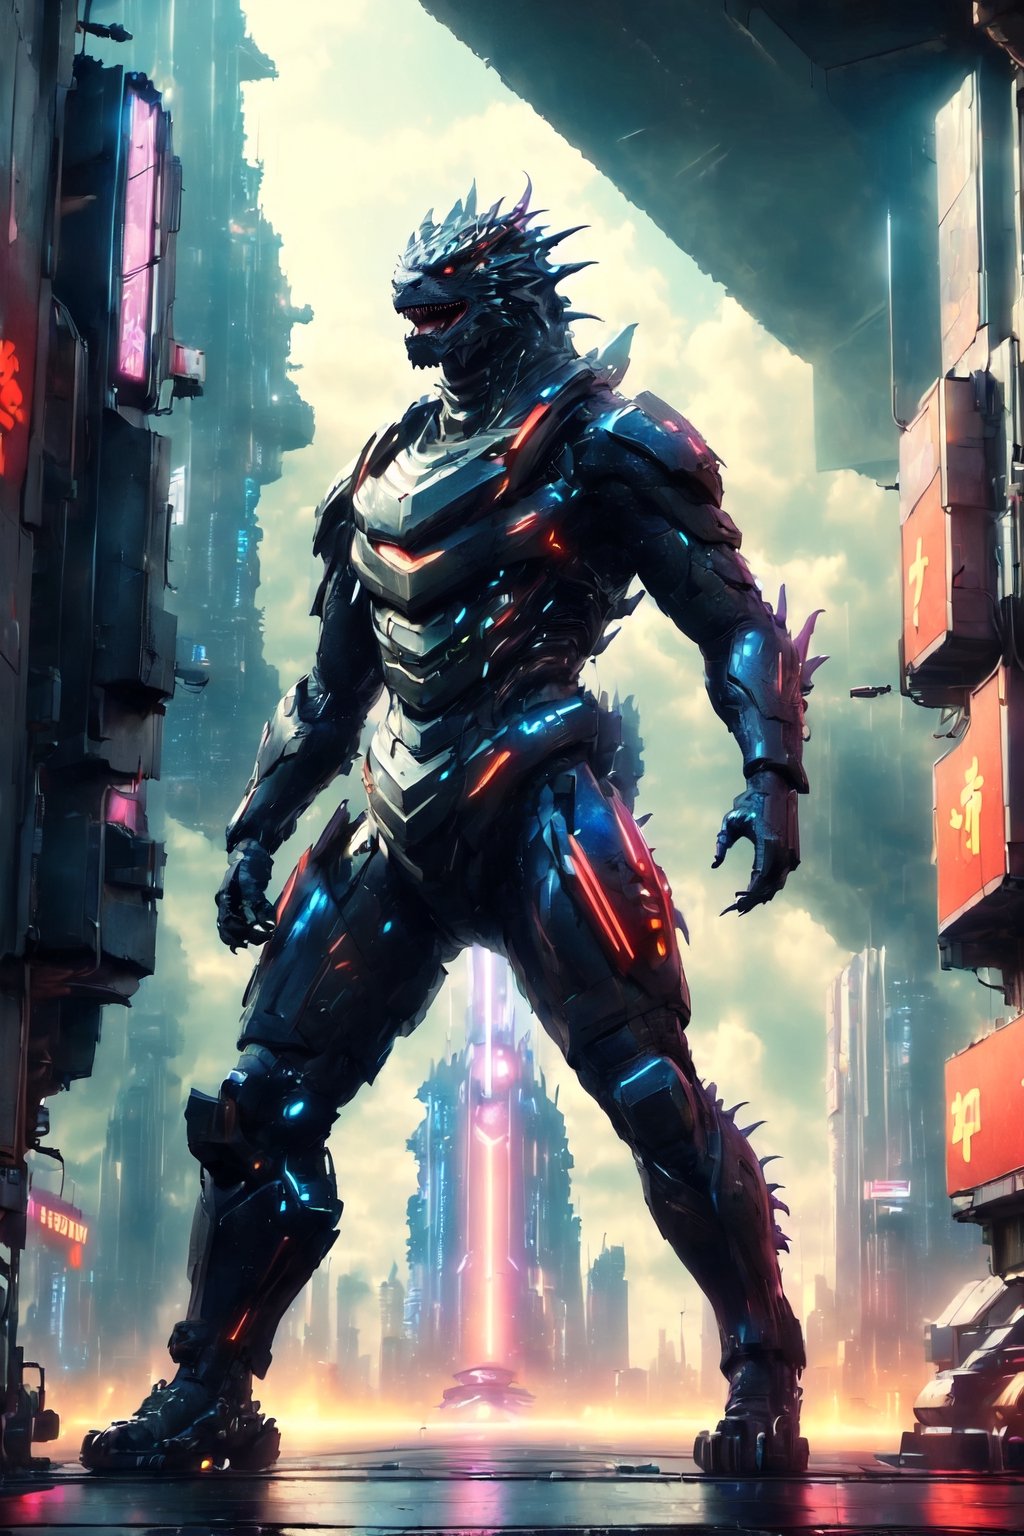 (Masterpiece:1.5), (Best quality:1.5), Cyberpunk style, full body, Godzilla, huge tail, facing the viewer, Godzilla tail, roar, laser, daytime, Doton, Cyberpunk,Chinese dragon